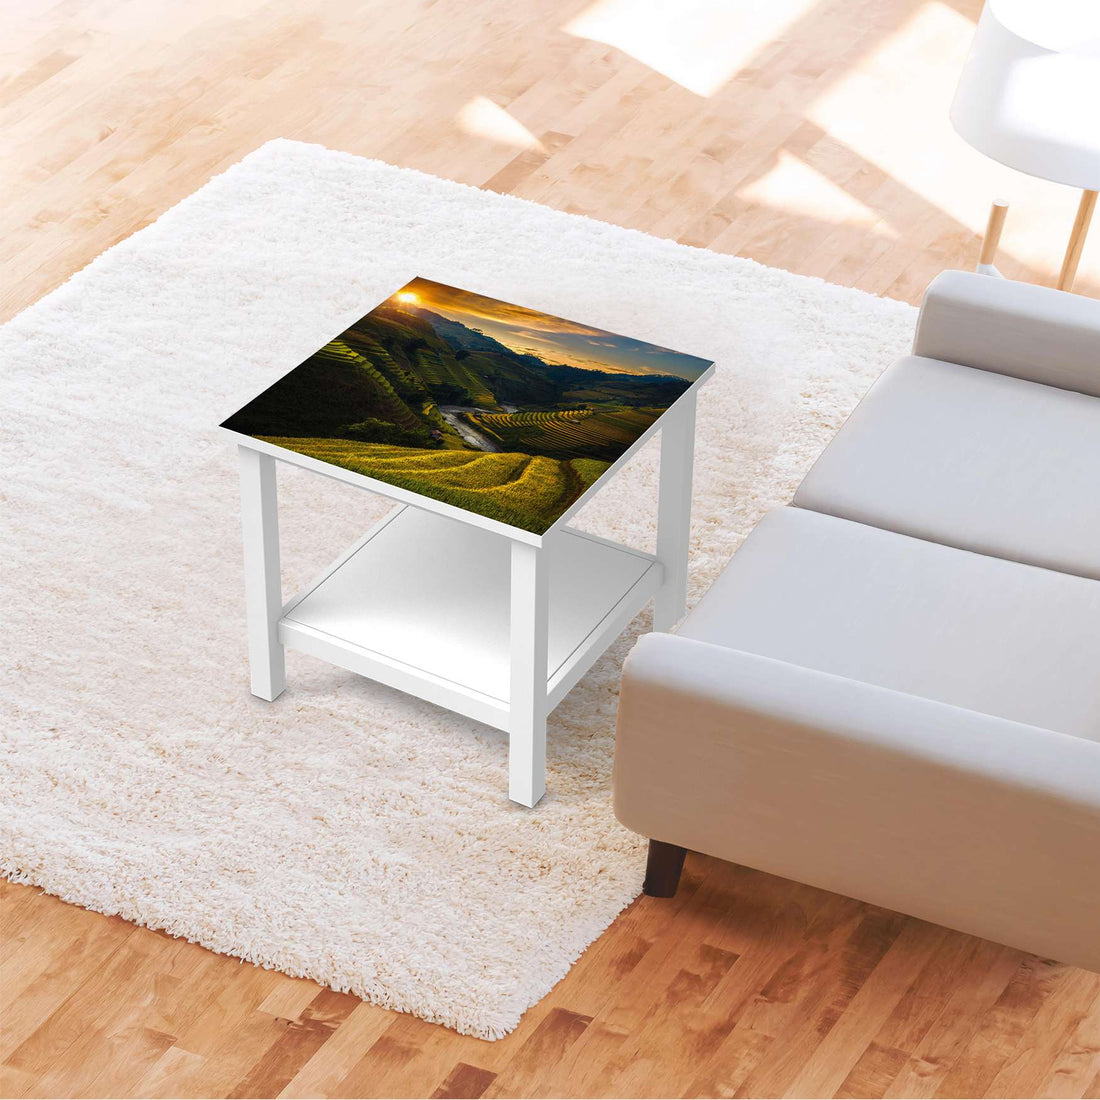 Möbel Klebefolie Reisterrassen - IKEA Hemnes Beistelltisch 55x55 cm - Wohnzimmer